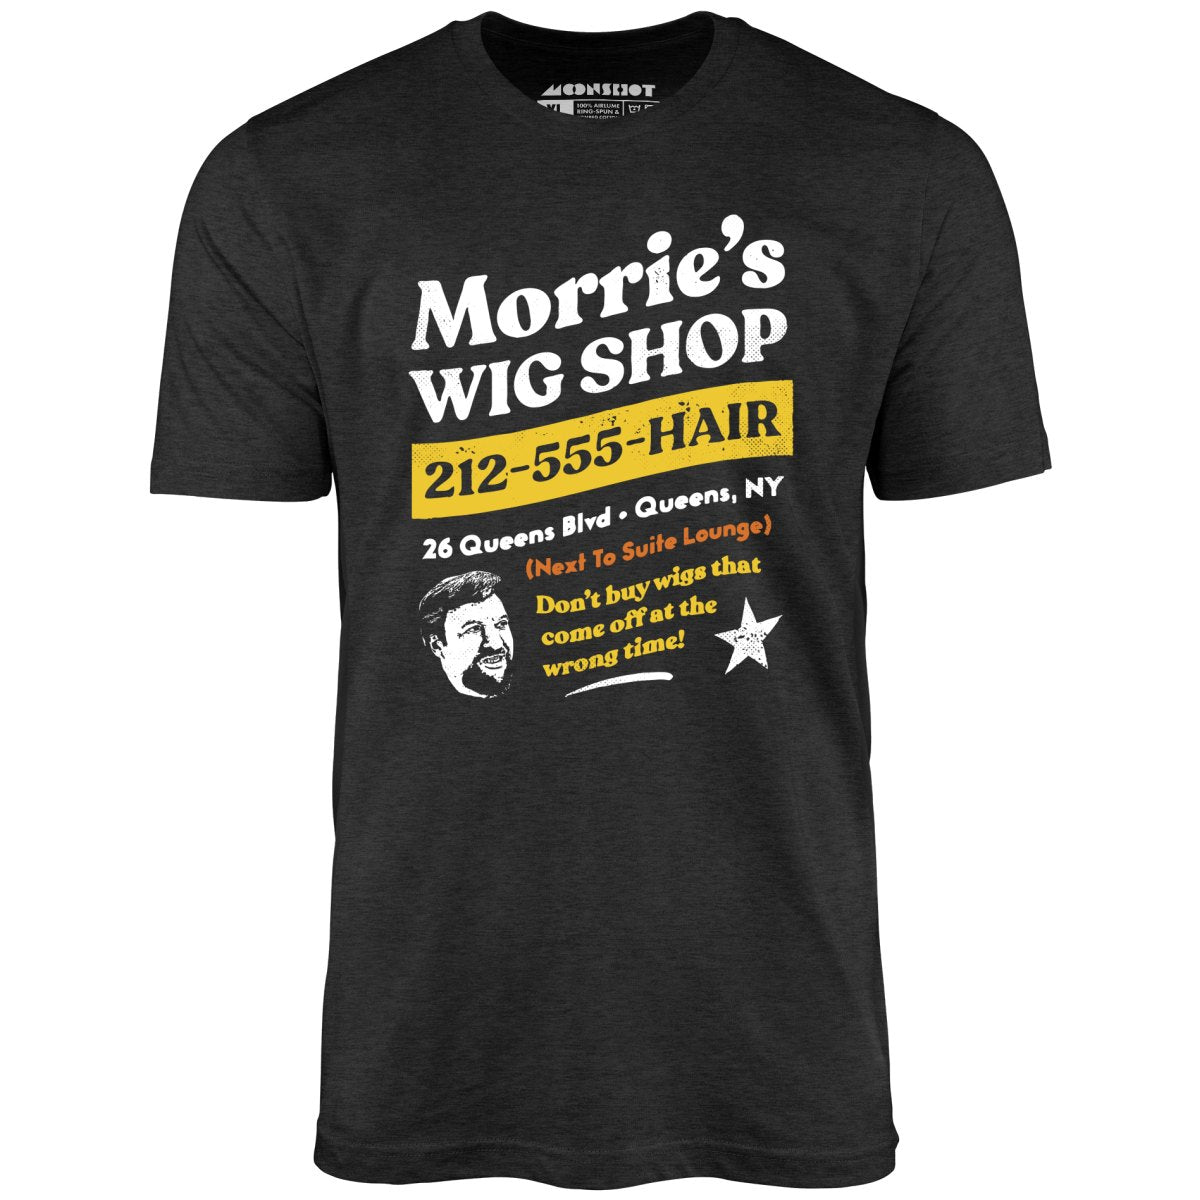 Morrie's Wig Shop - Unisex T-Shirt